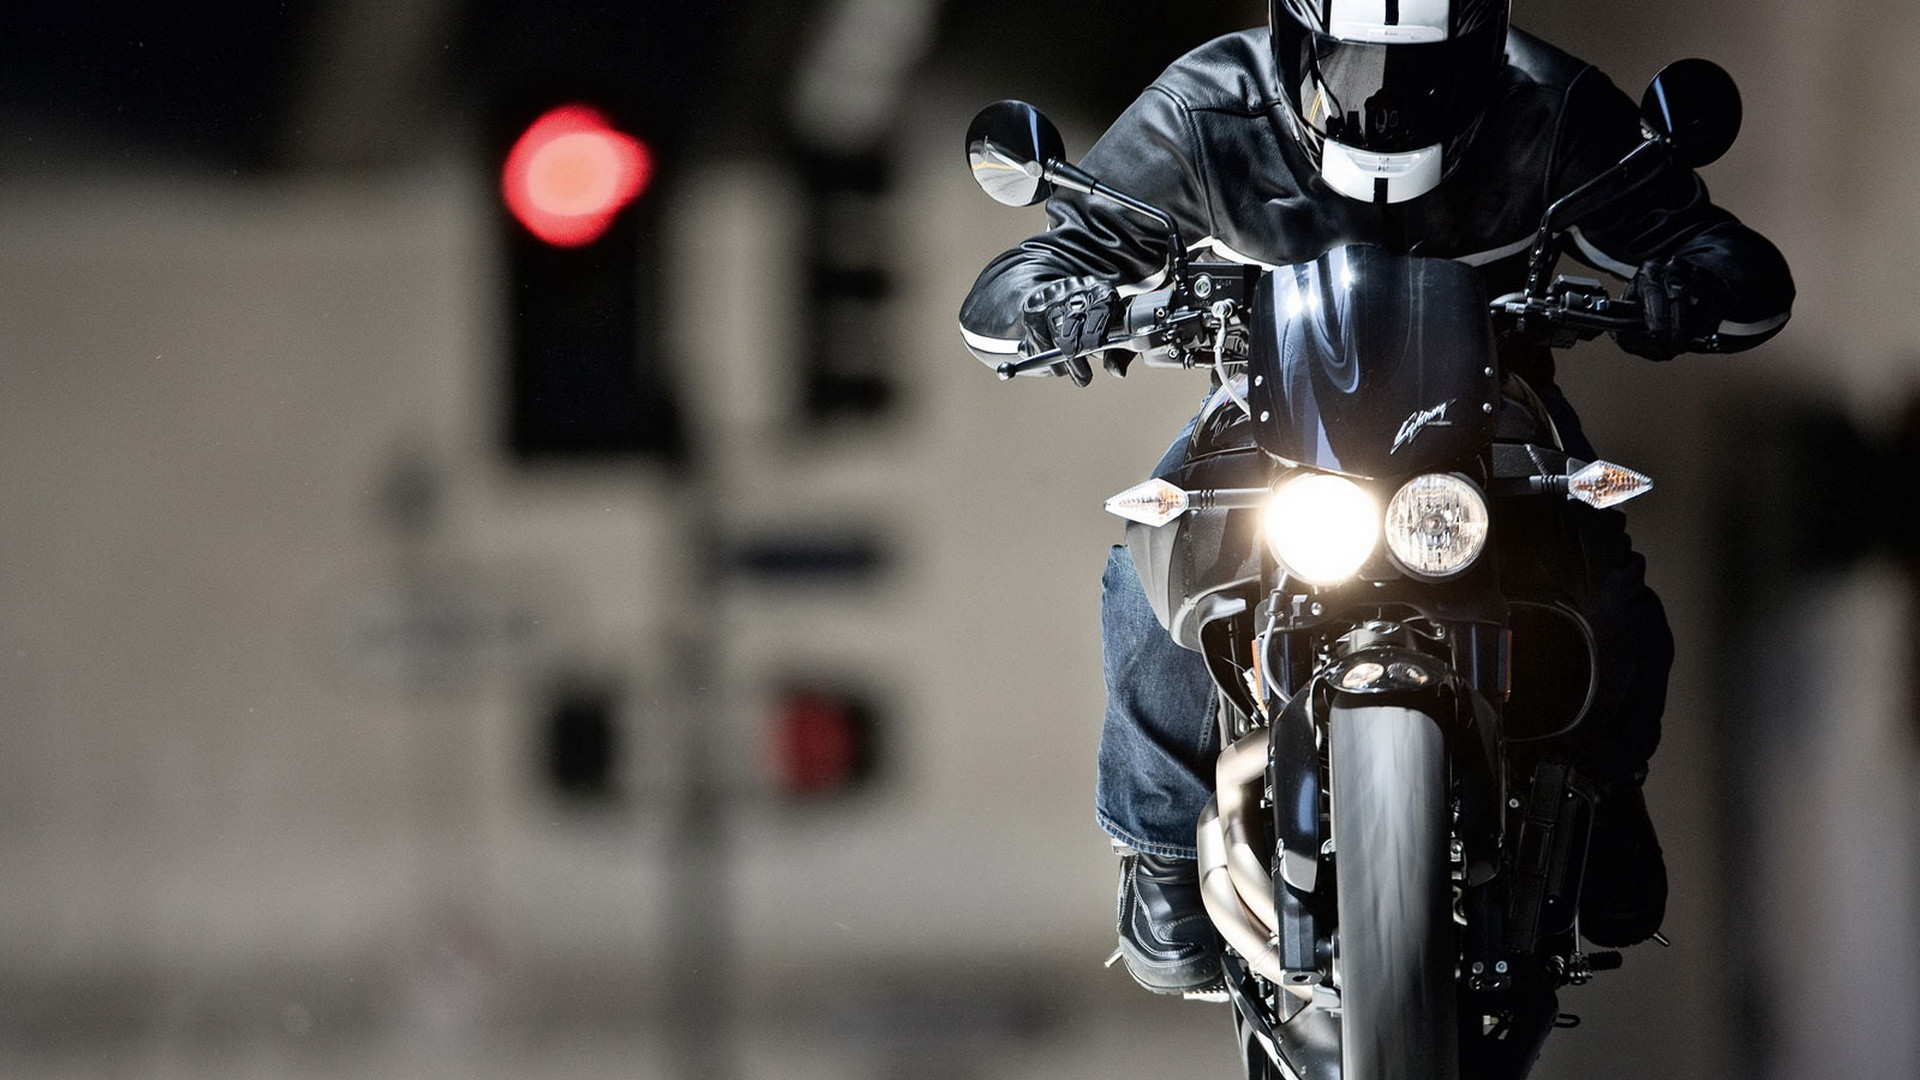 比尔摩托车公司, 车灯, 头灯, 摩托车配件, 汽车轮胎 壁纸 1920x1080 允许